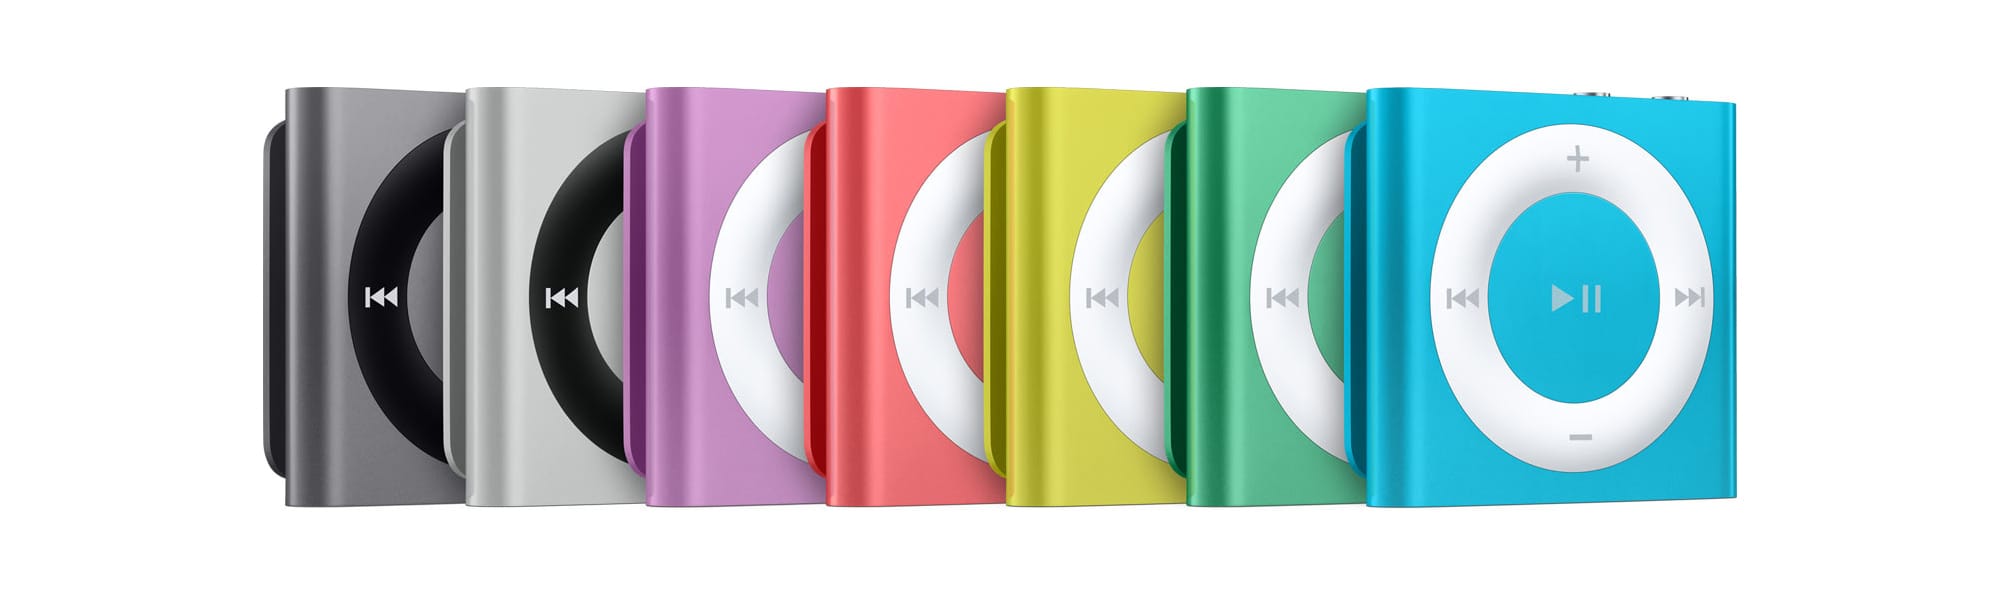 iPod-y nano i shuffle odchodzą do historii